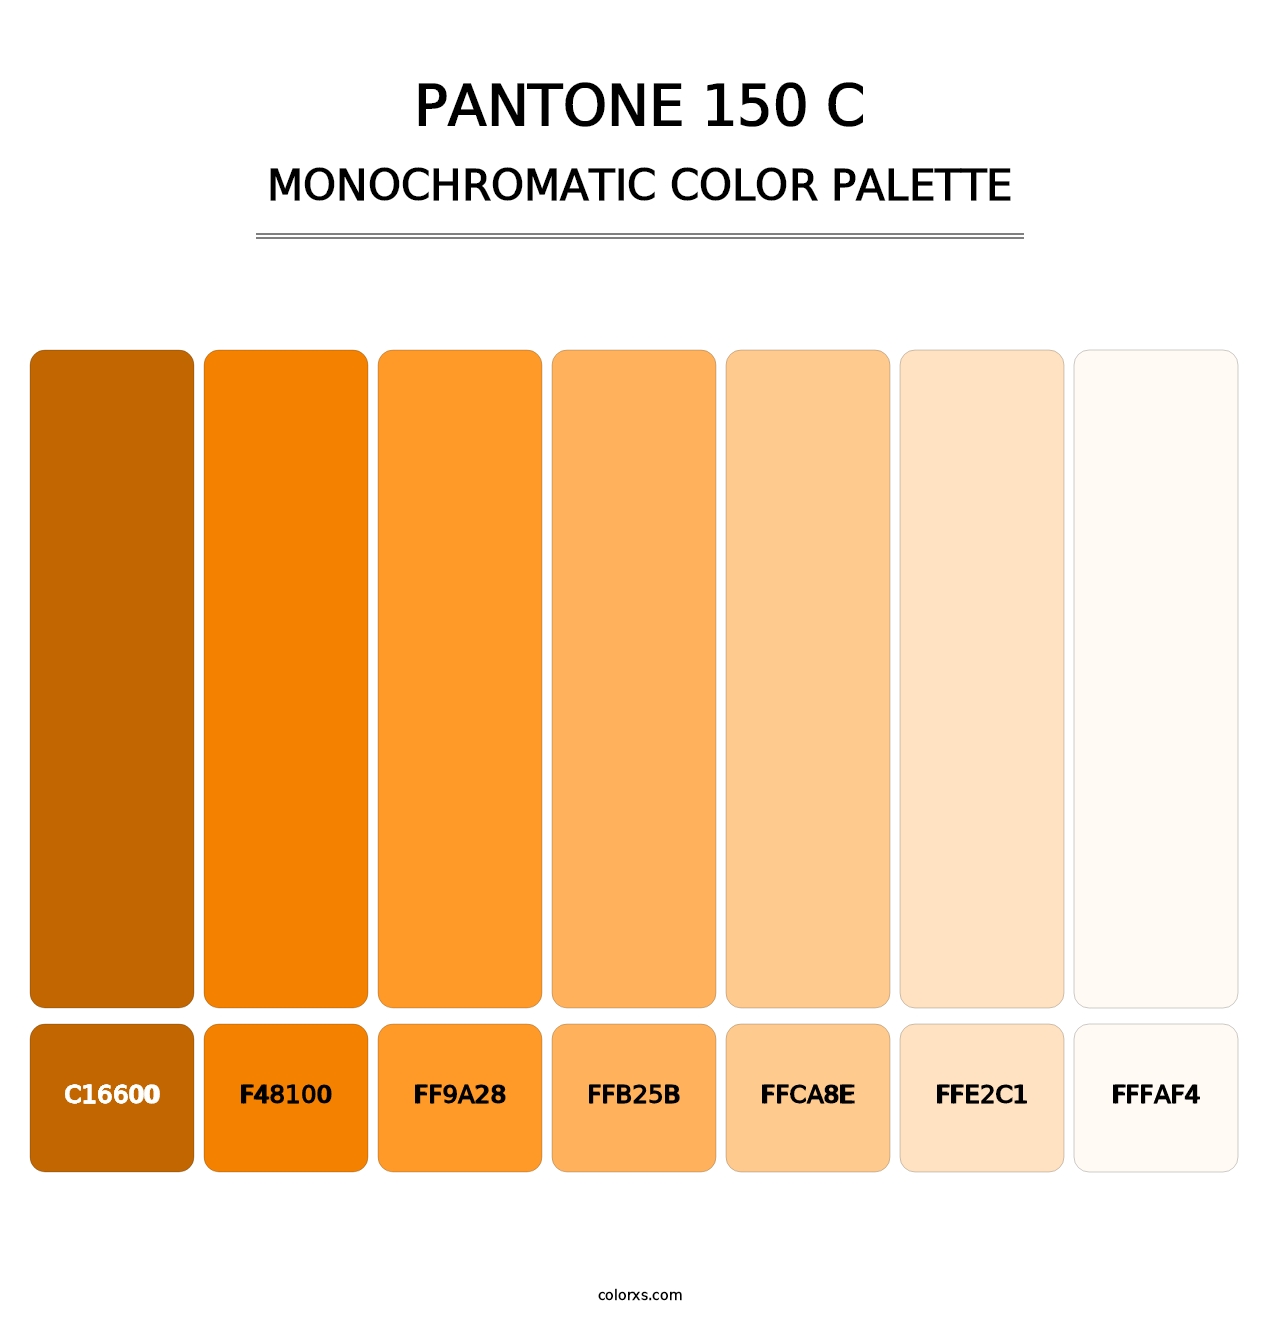 PANTONE 150 C - Monochromatic Color Palette